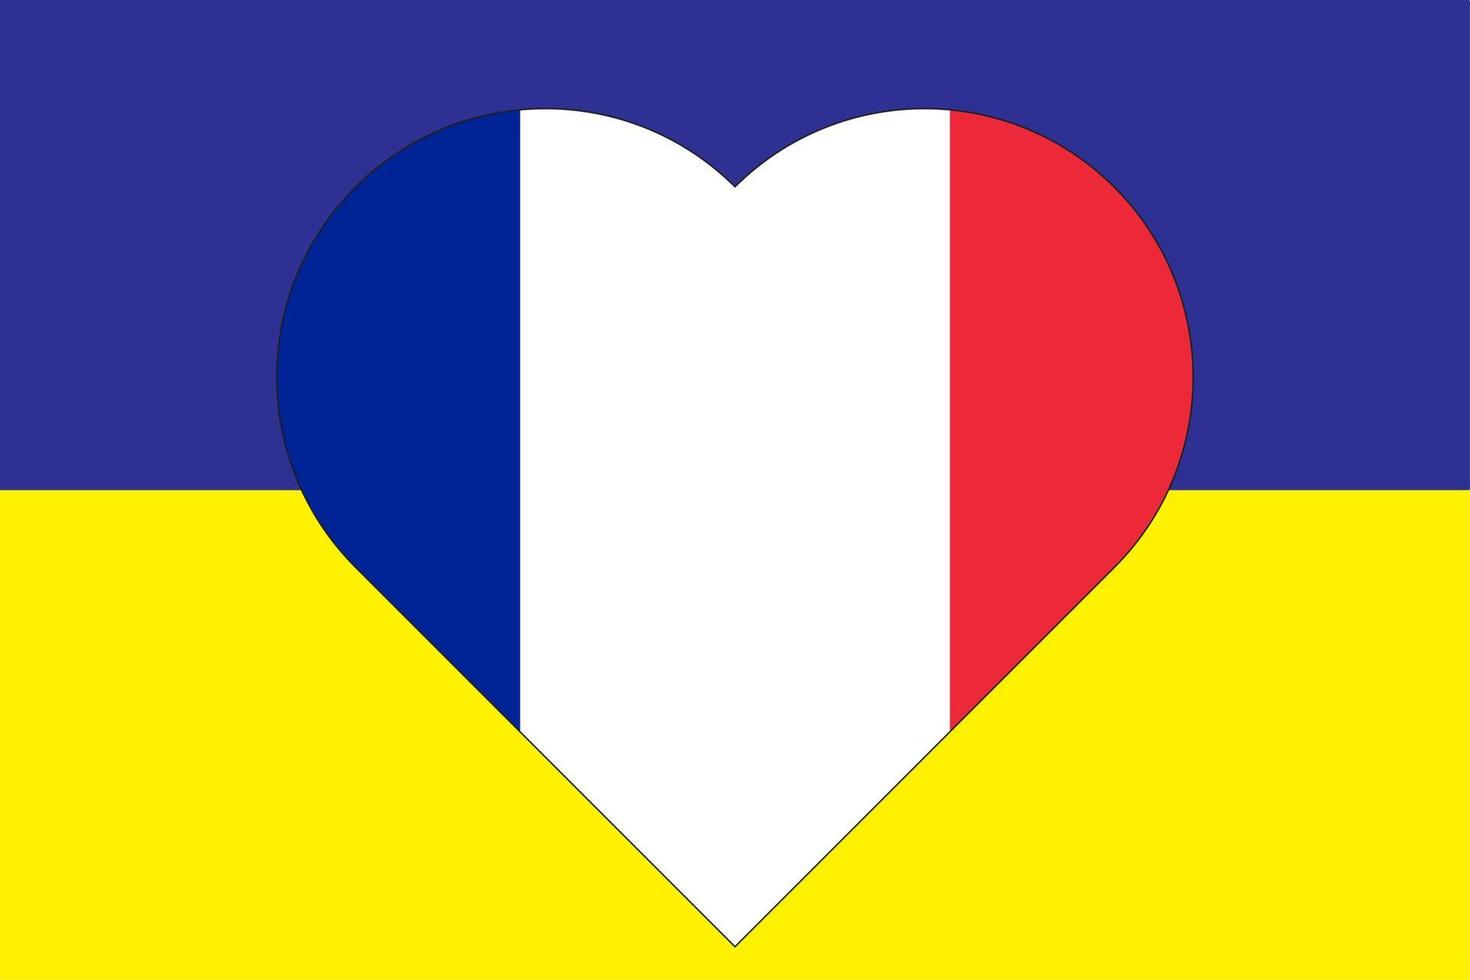 coração pintado nas cores da bandeira da frança na bandeira da ucrânia. ilustração em vetor de um coração com o símbolo nacional da frança em um fundo azul-amarelo.